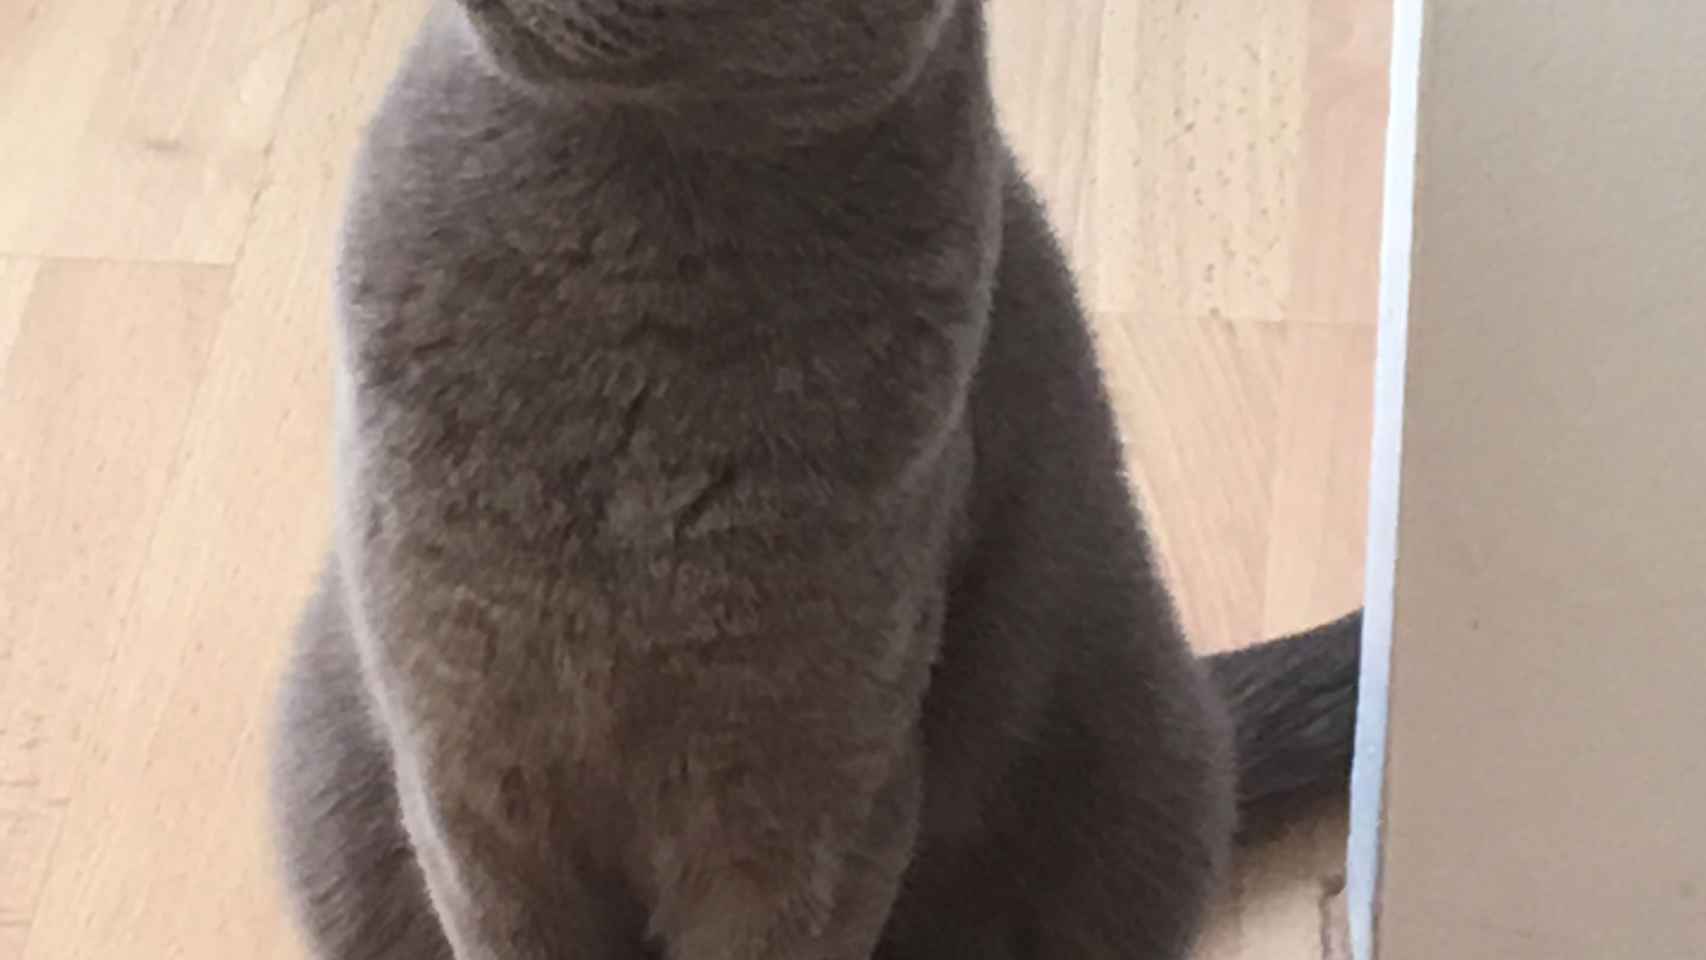 Gato azul ruso